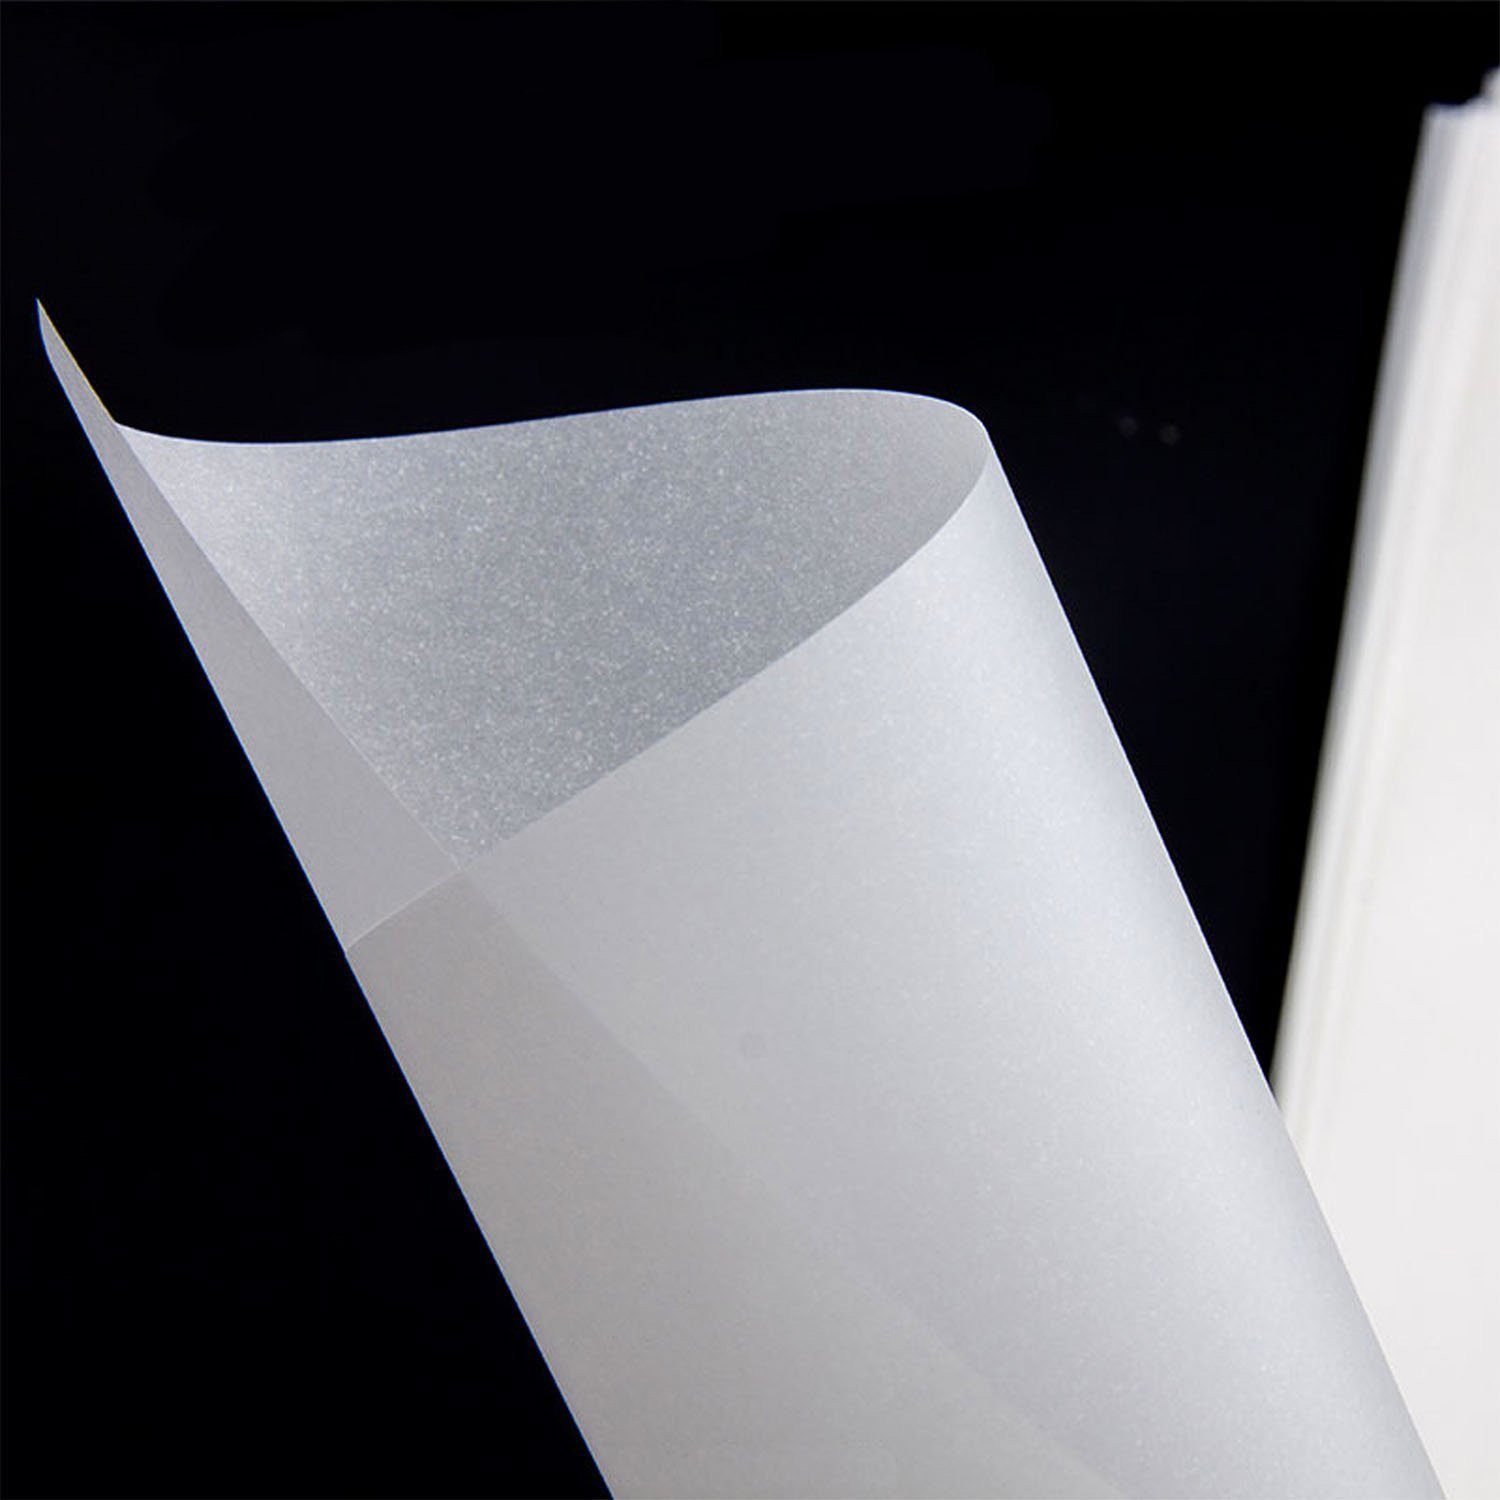 A4, A4, DIN Papier 125 DIN Blatt, Tritart Bedruckbares 125 Transparentes Blatt, 100g/m², transparentes Transparentpapier Papier 100g/m² Bedrucken, zum